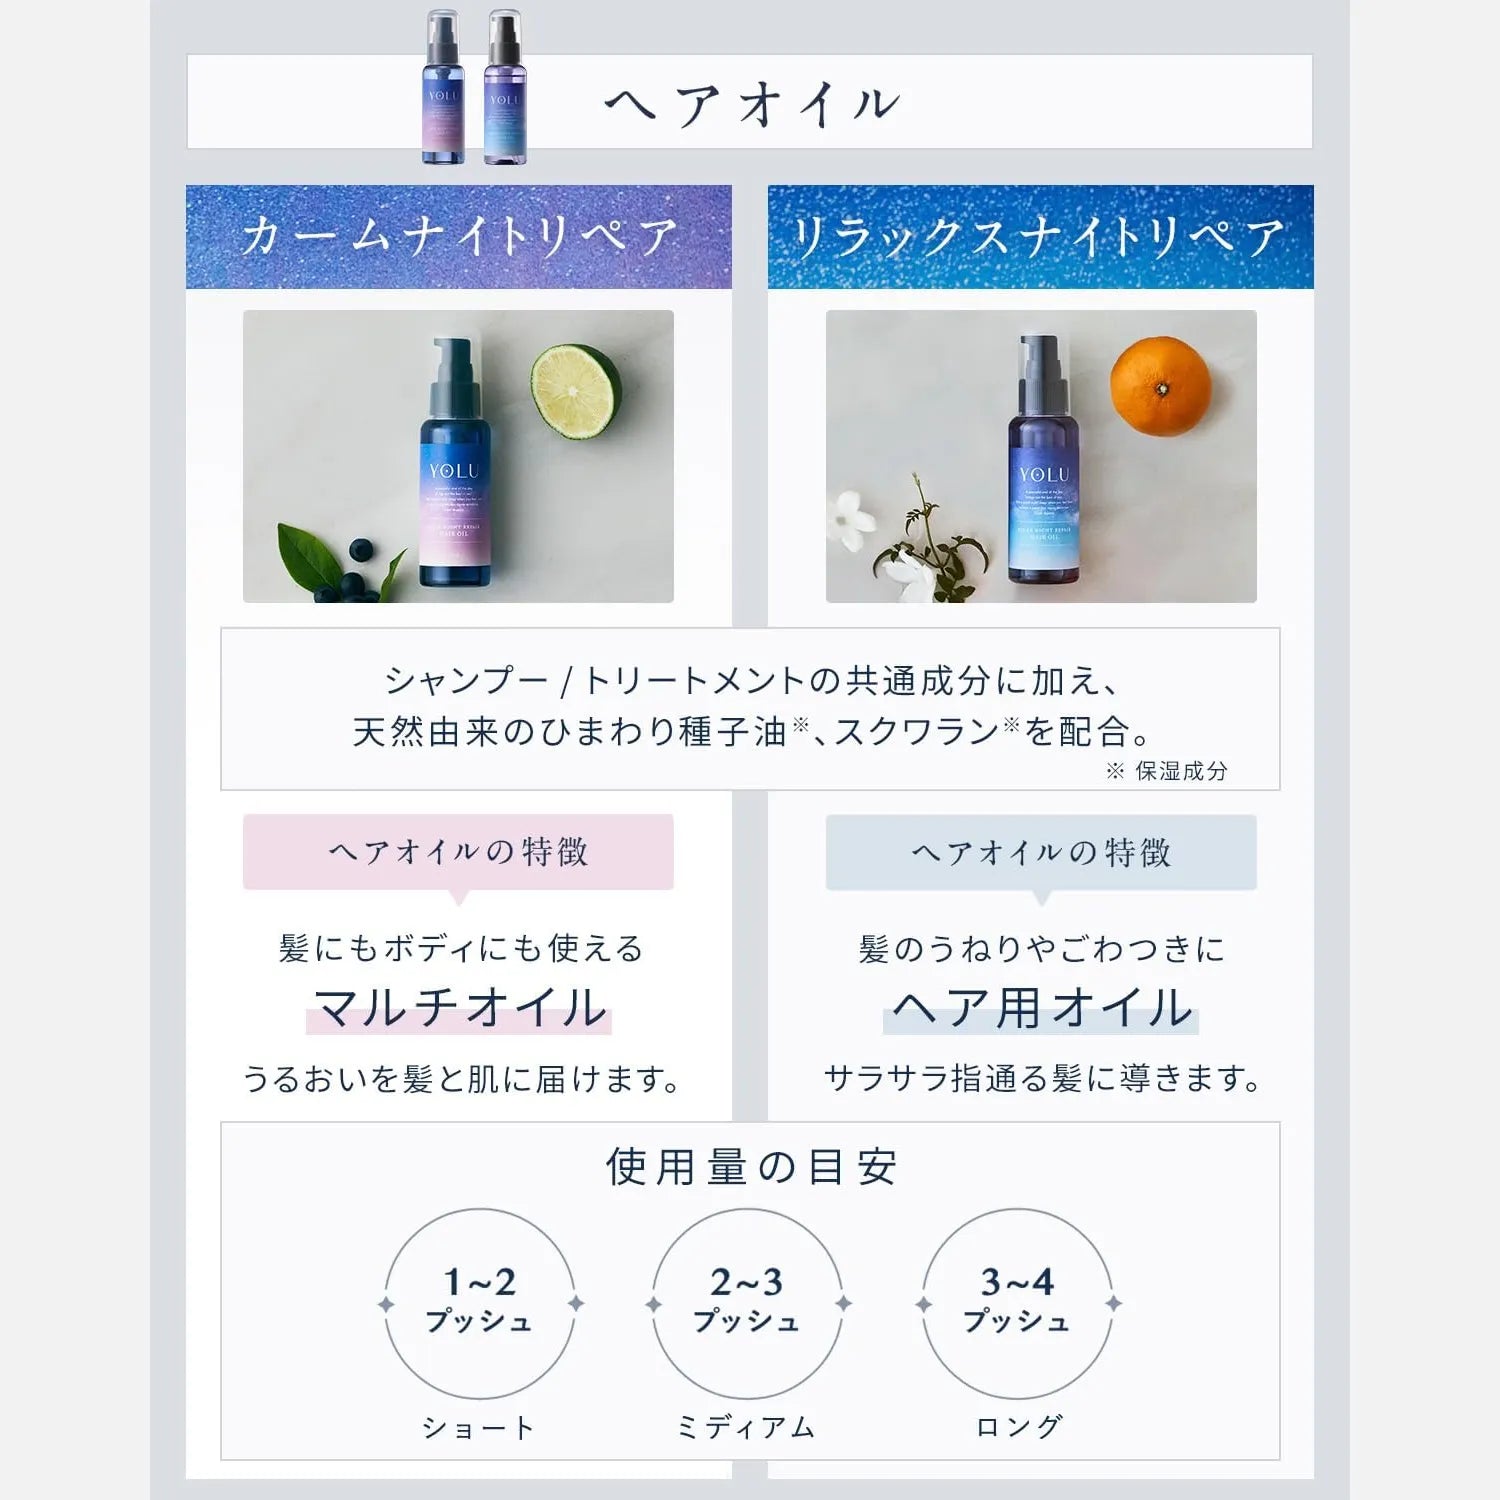 YOLU Calm Night Repair Shampoo, Treatment & Hair Oil Set (475ml Each + 80ml) - Buy Me Japan